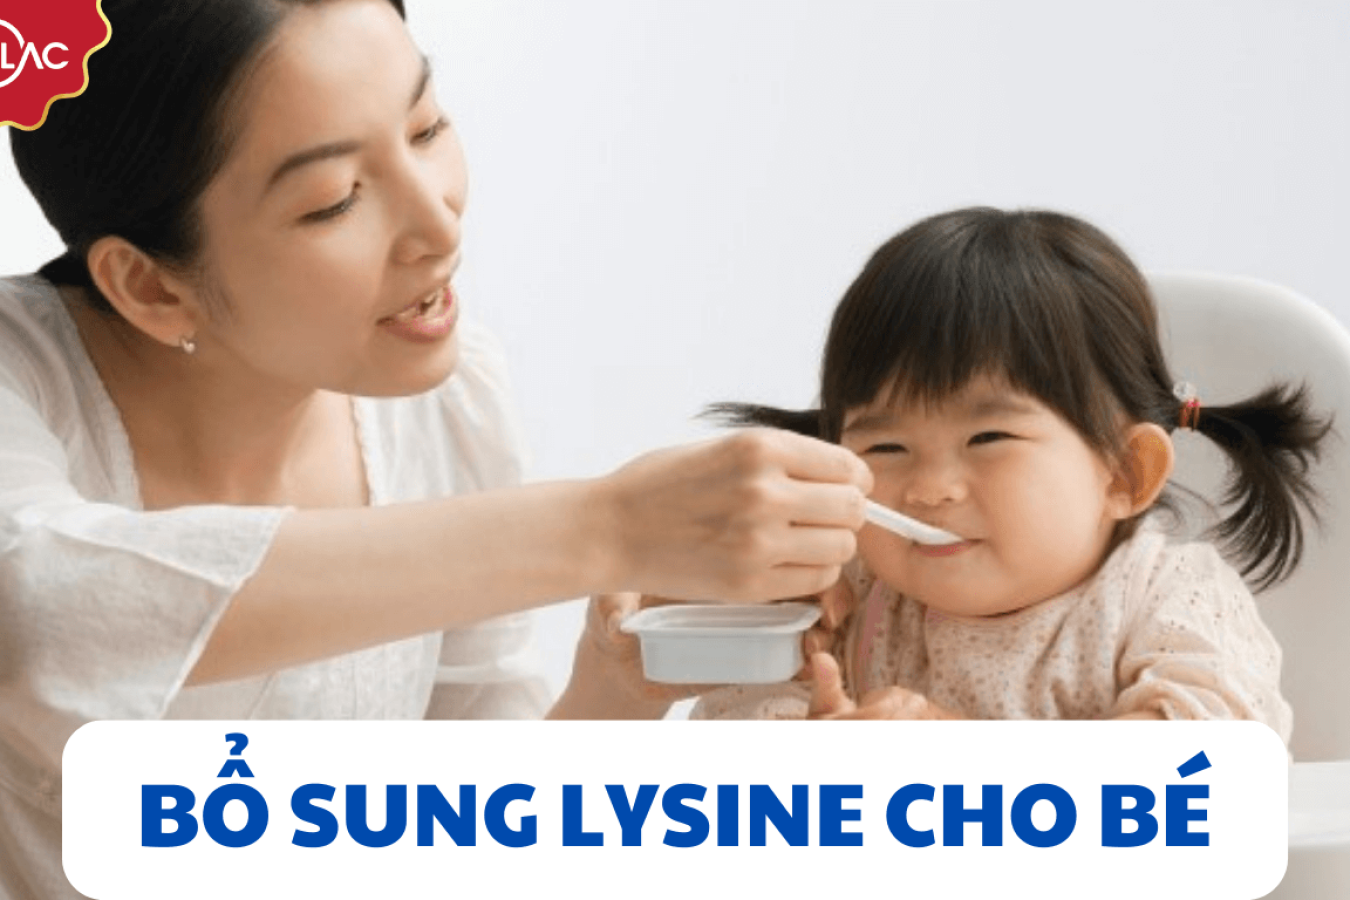 Phương pháp bổ sung Lysine cho bé đúng cách để cải thiện sức khỏe